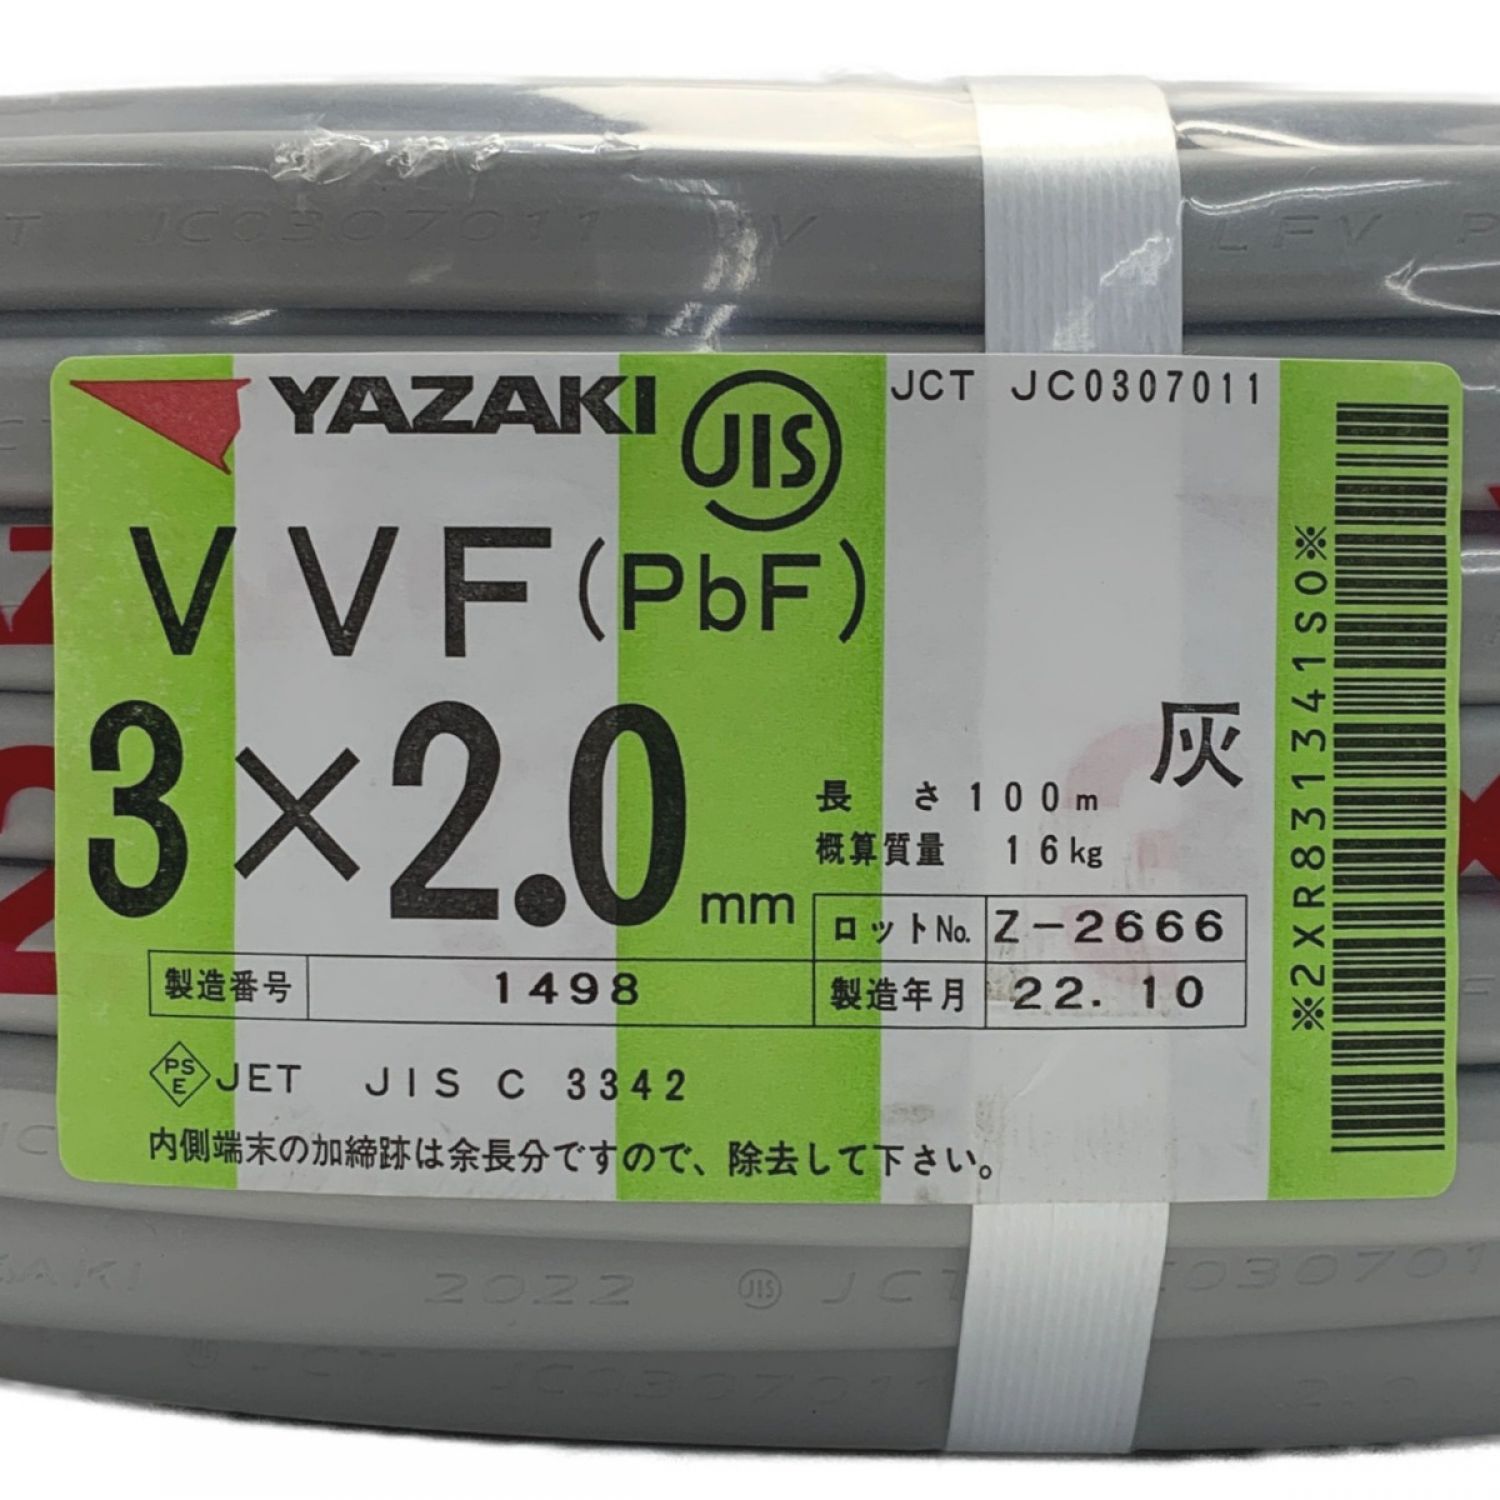 中古】 《 VVFケーブル 平形 》100m巻 / 灰色 / VVF3×2.0 / 1498 3ｘ2